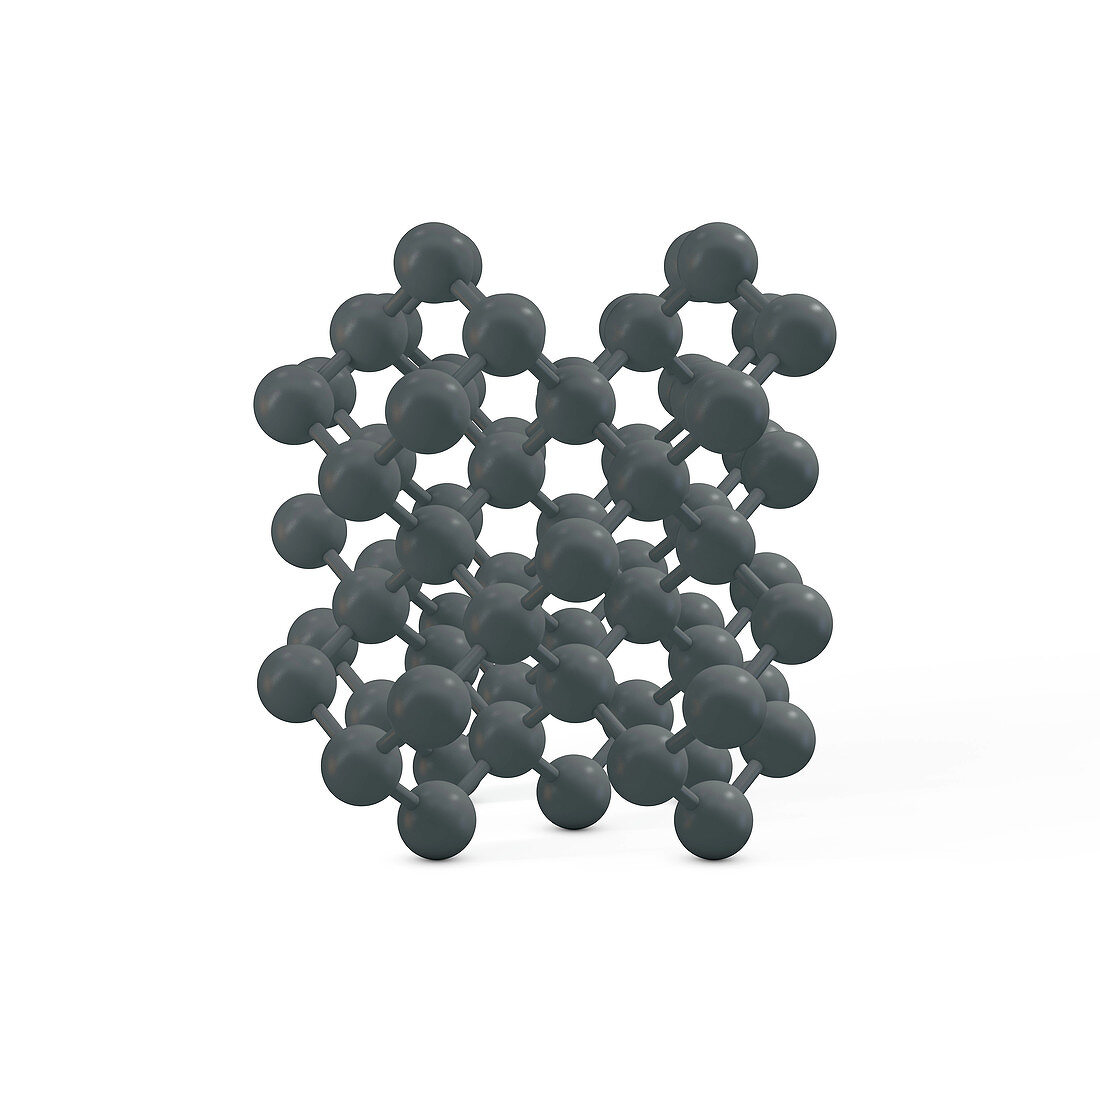 Diamond molecule, illustration